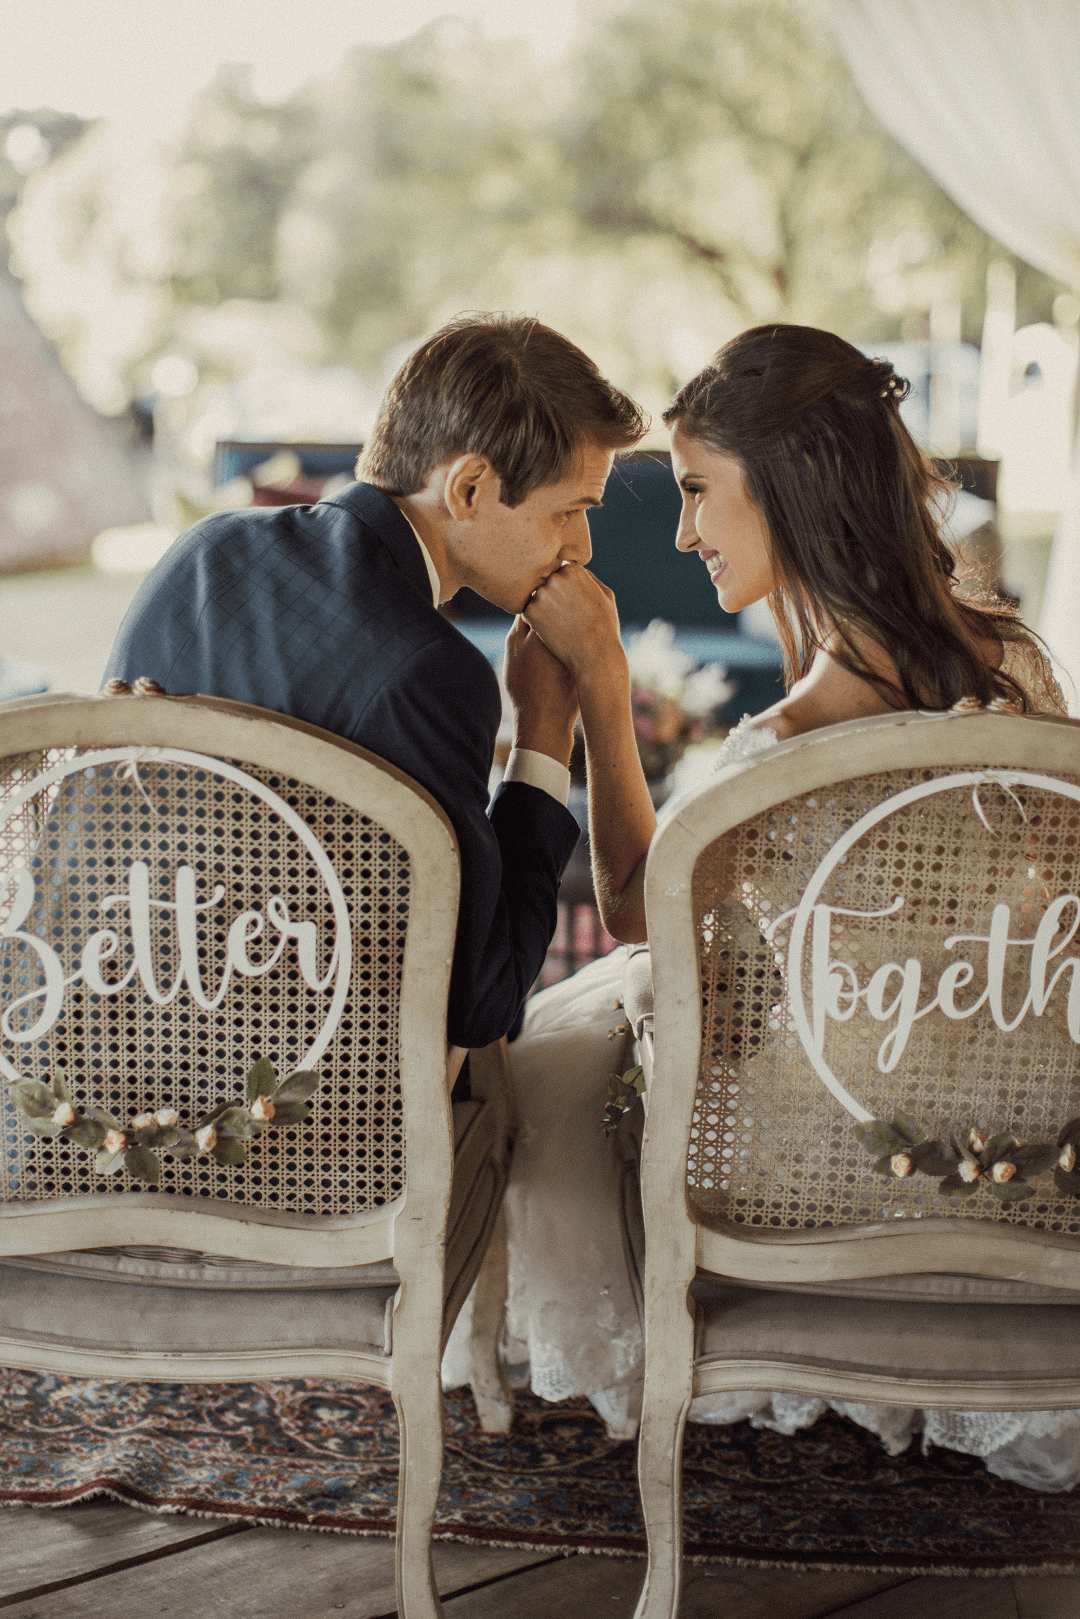 Casamento intimista com cerimônia ao ar livre no lago numa tarde adorável e iluminada no Paraná &#8211; Gisely &#038; Rogerio